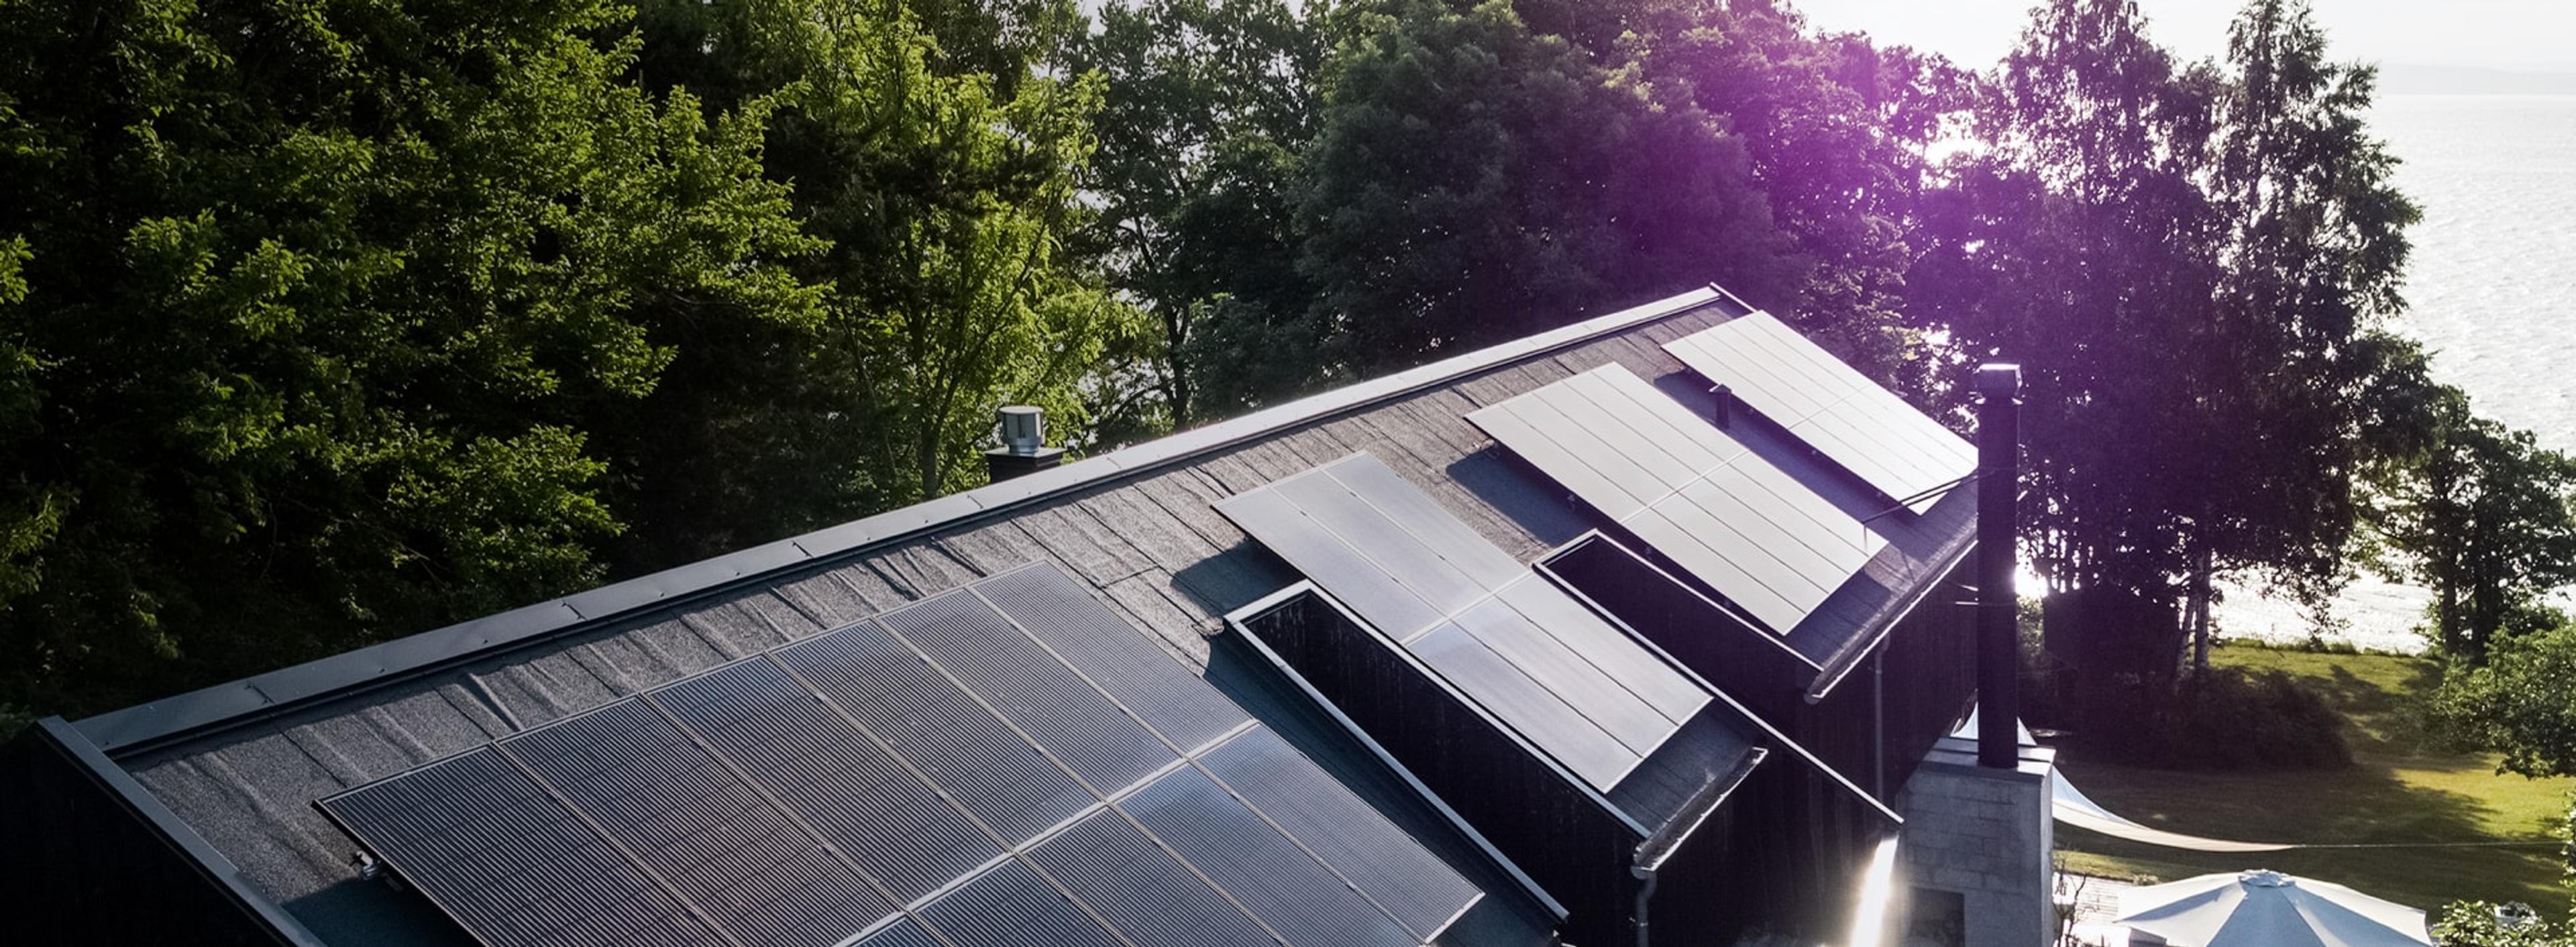 et hus med solcellepaneler installert på taket